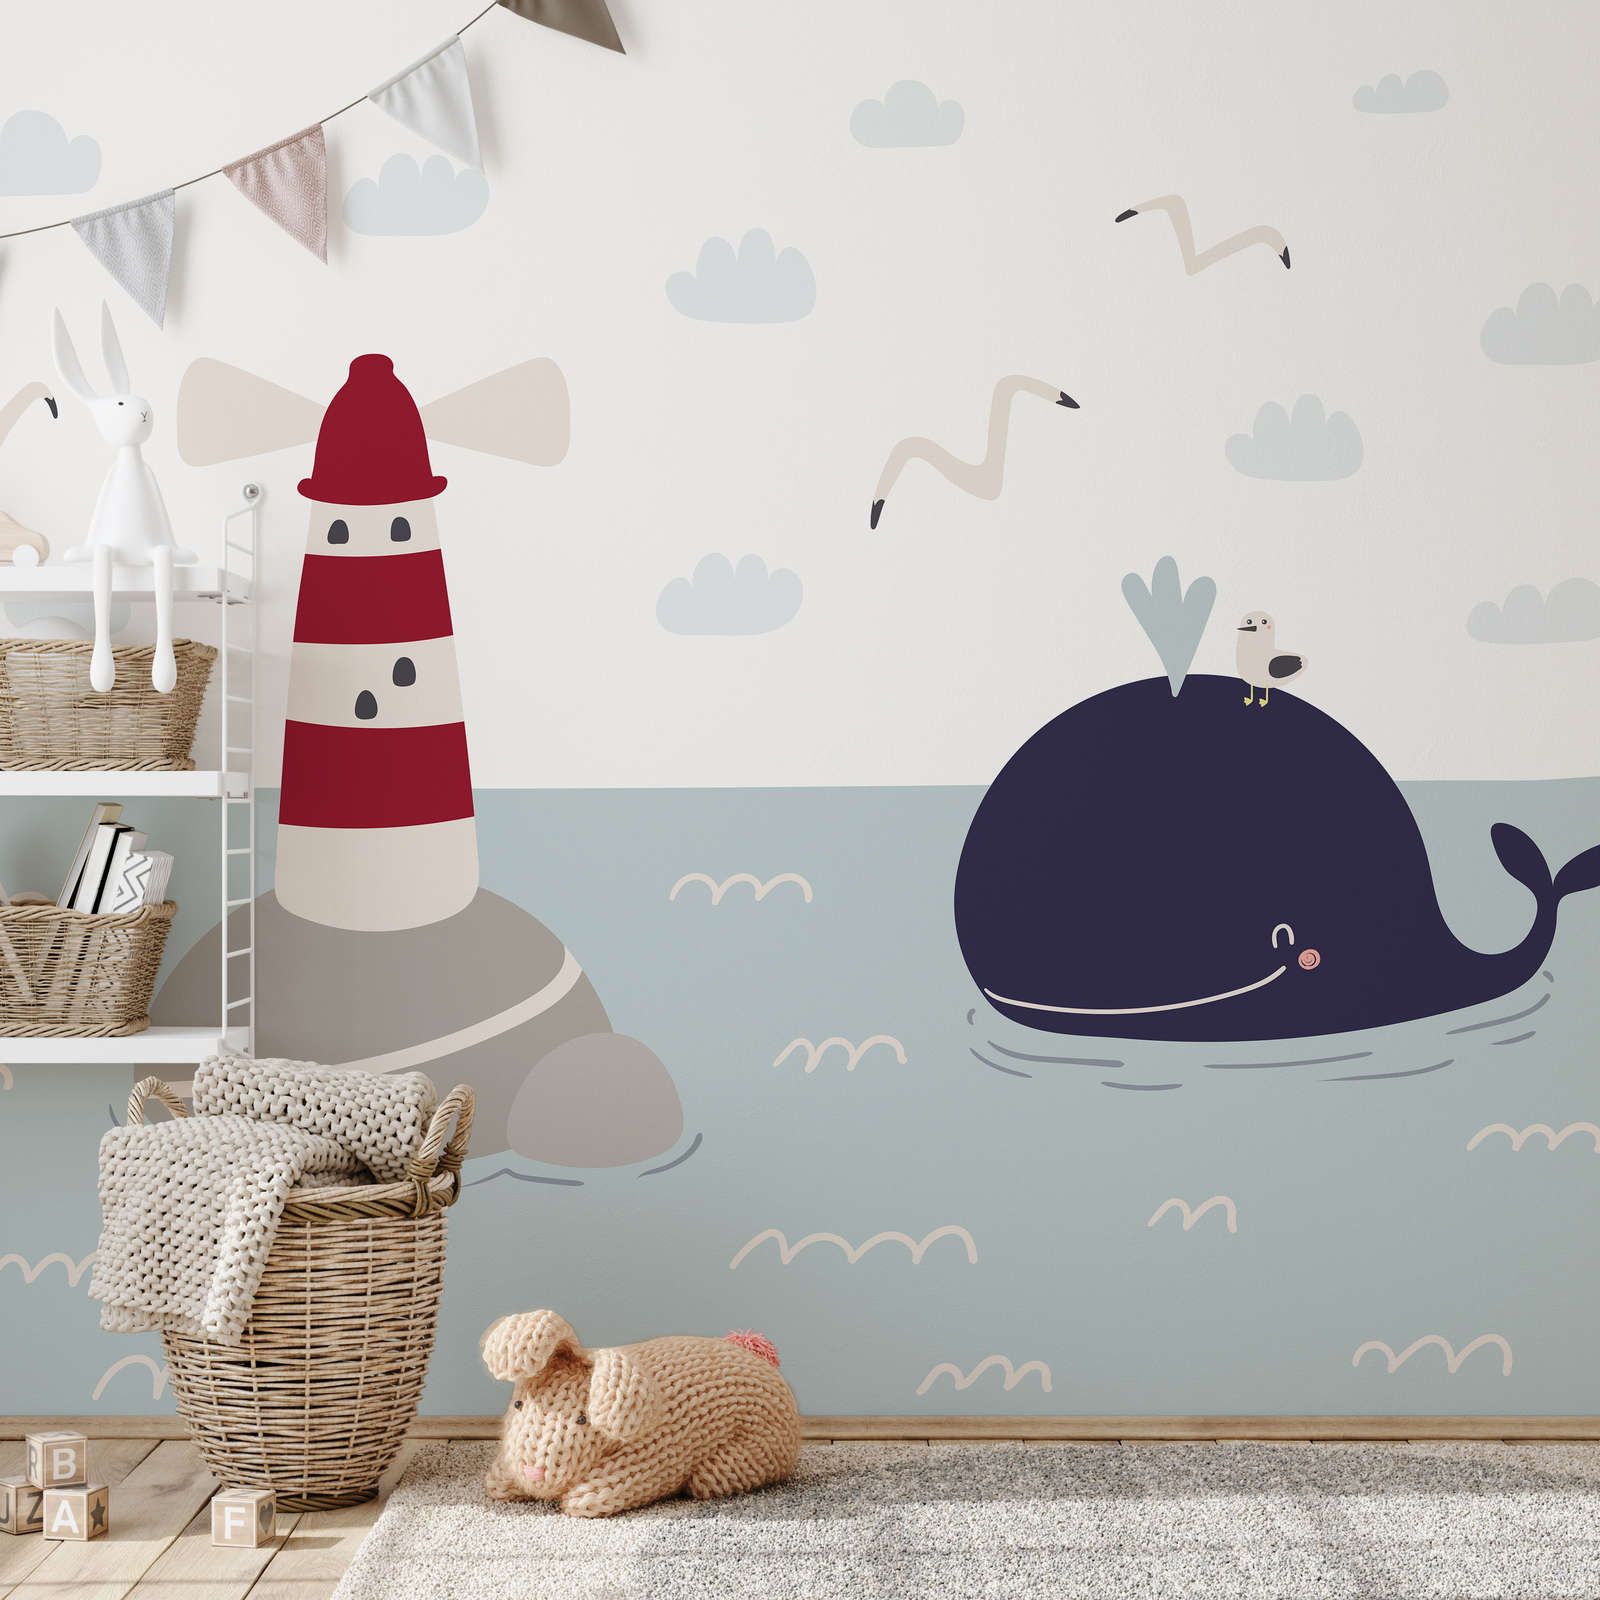             Papel pintado fotográfico para habitación infantil con faro y ballena - Material sin tejer liso y ligeramente brillante
        